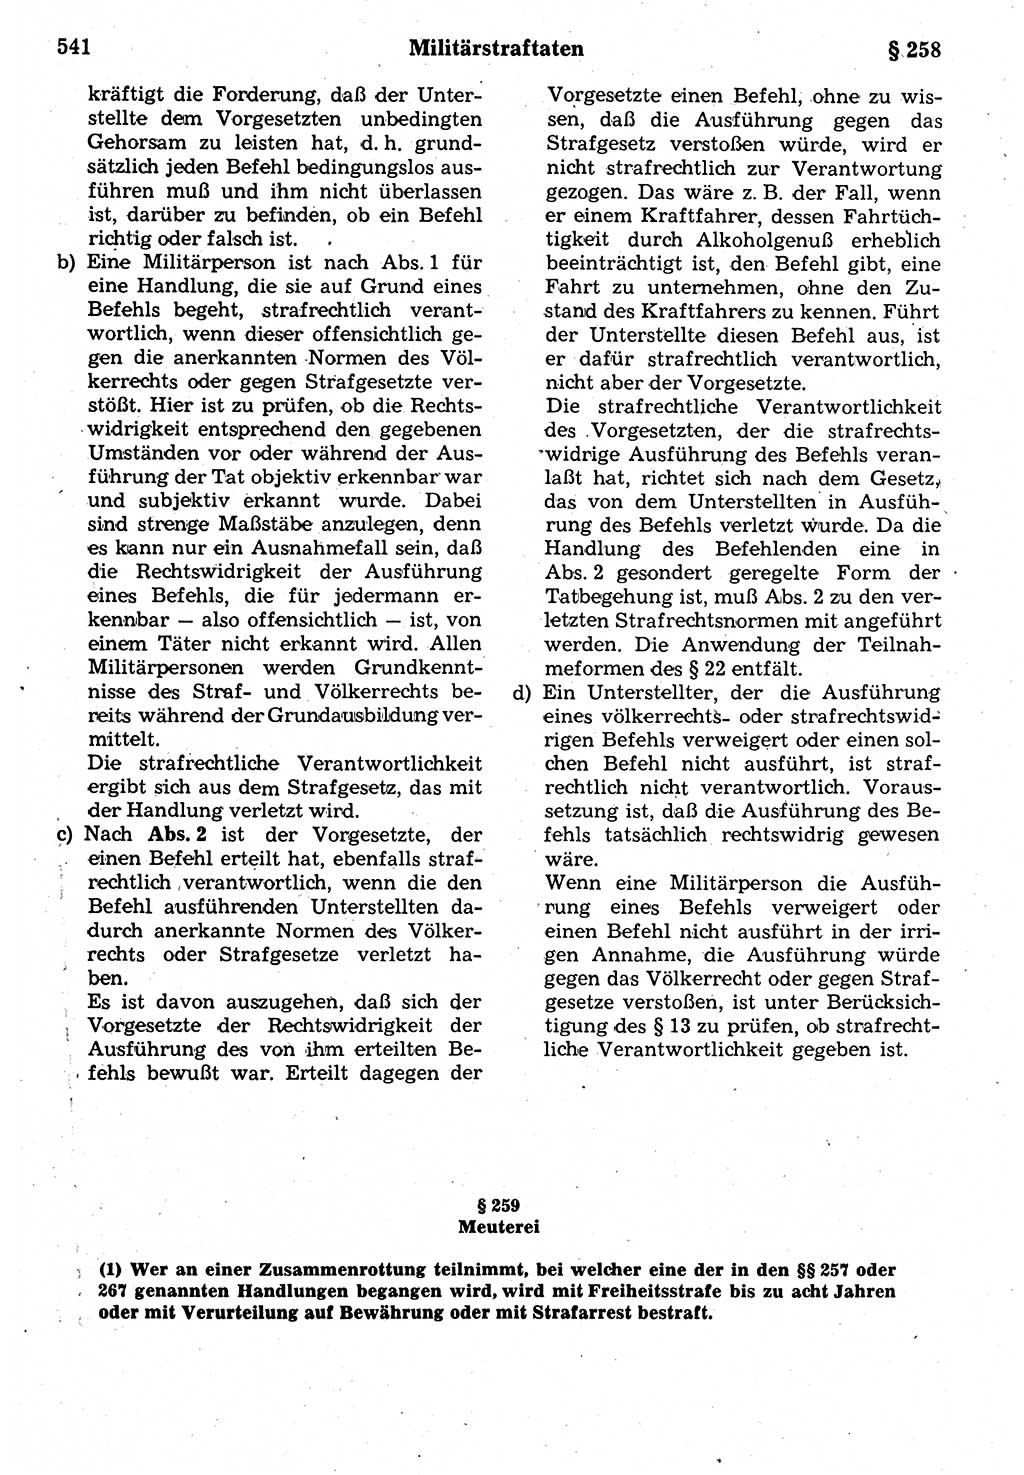 Strafrecht der Deutschen Demokratischen Republik (DDR), Kommentar zum Strafgesetzbuch (StGB) 1987, Seite 541 (Strafr. DDR Komm. StGB 1987, S. 541)